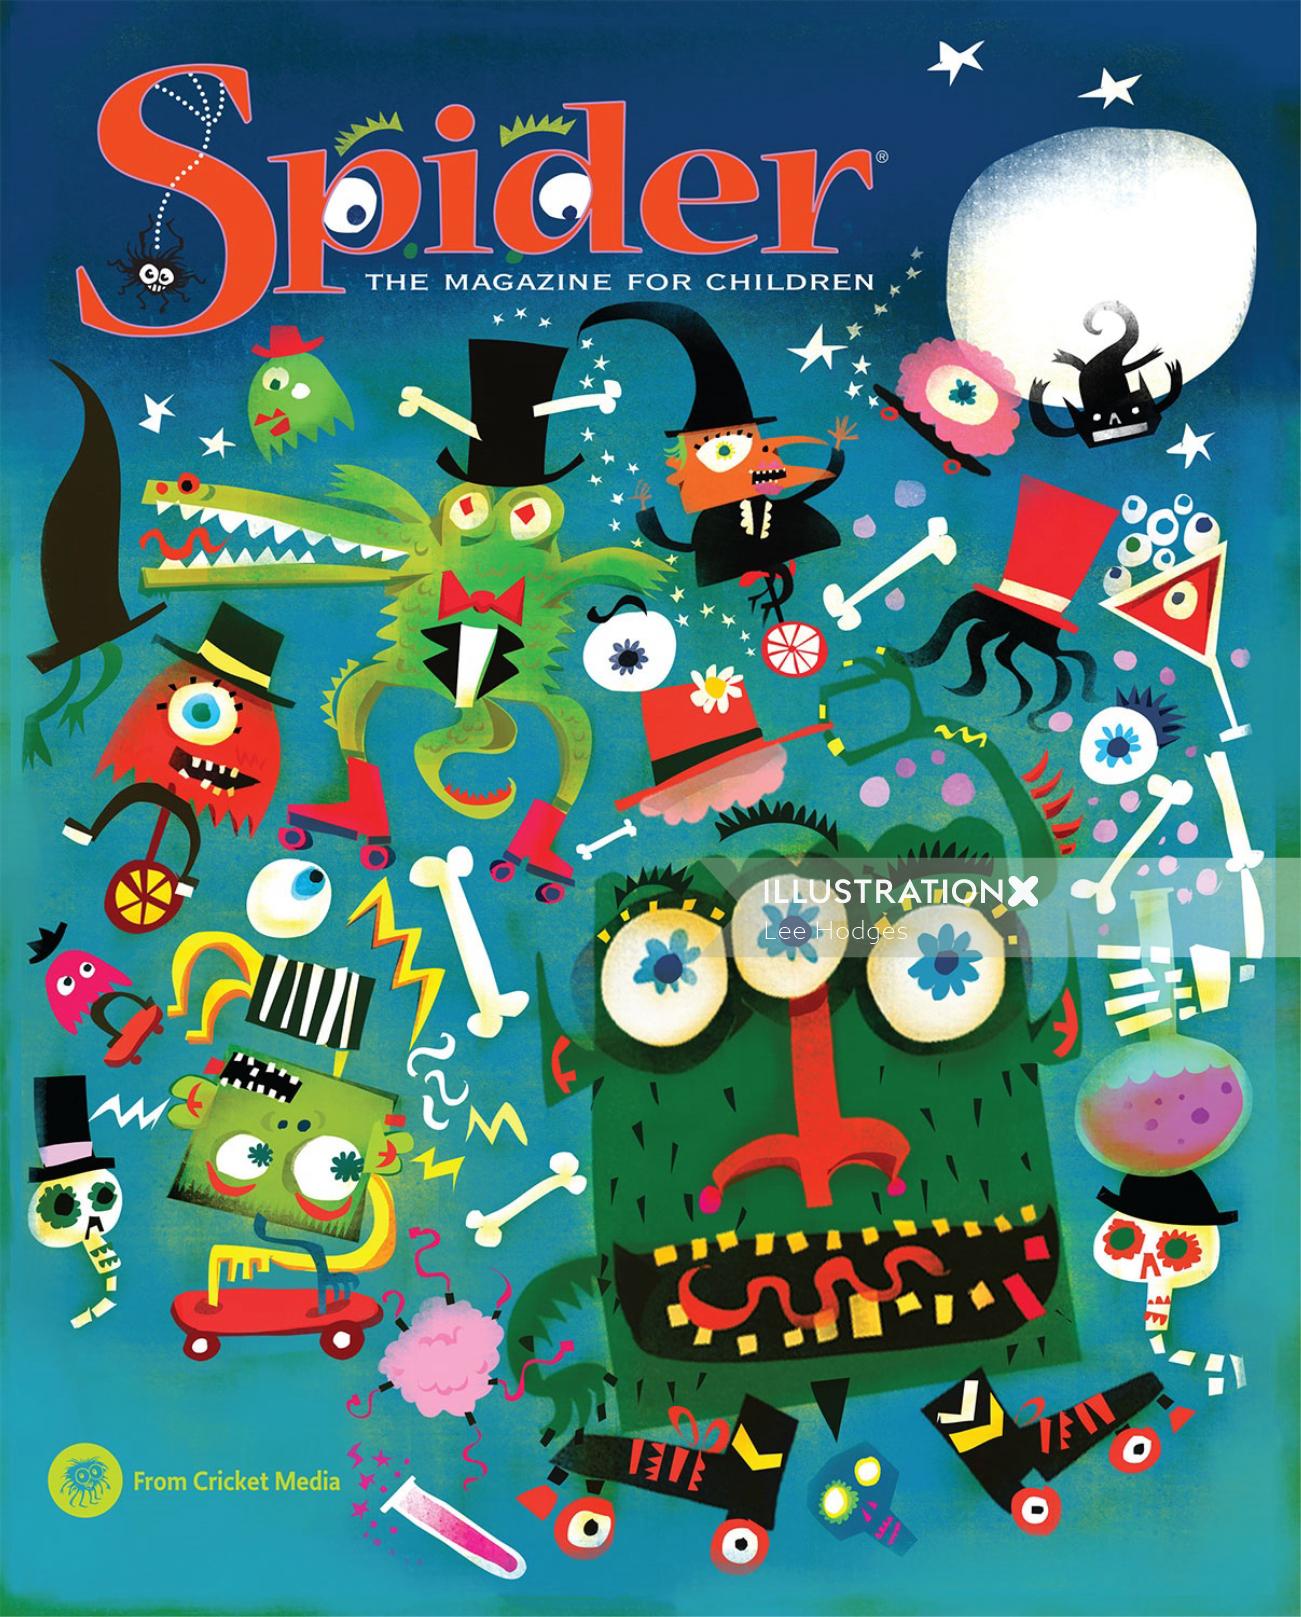 Diseño de póster para la revista Spider para niños